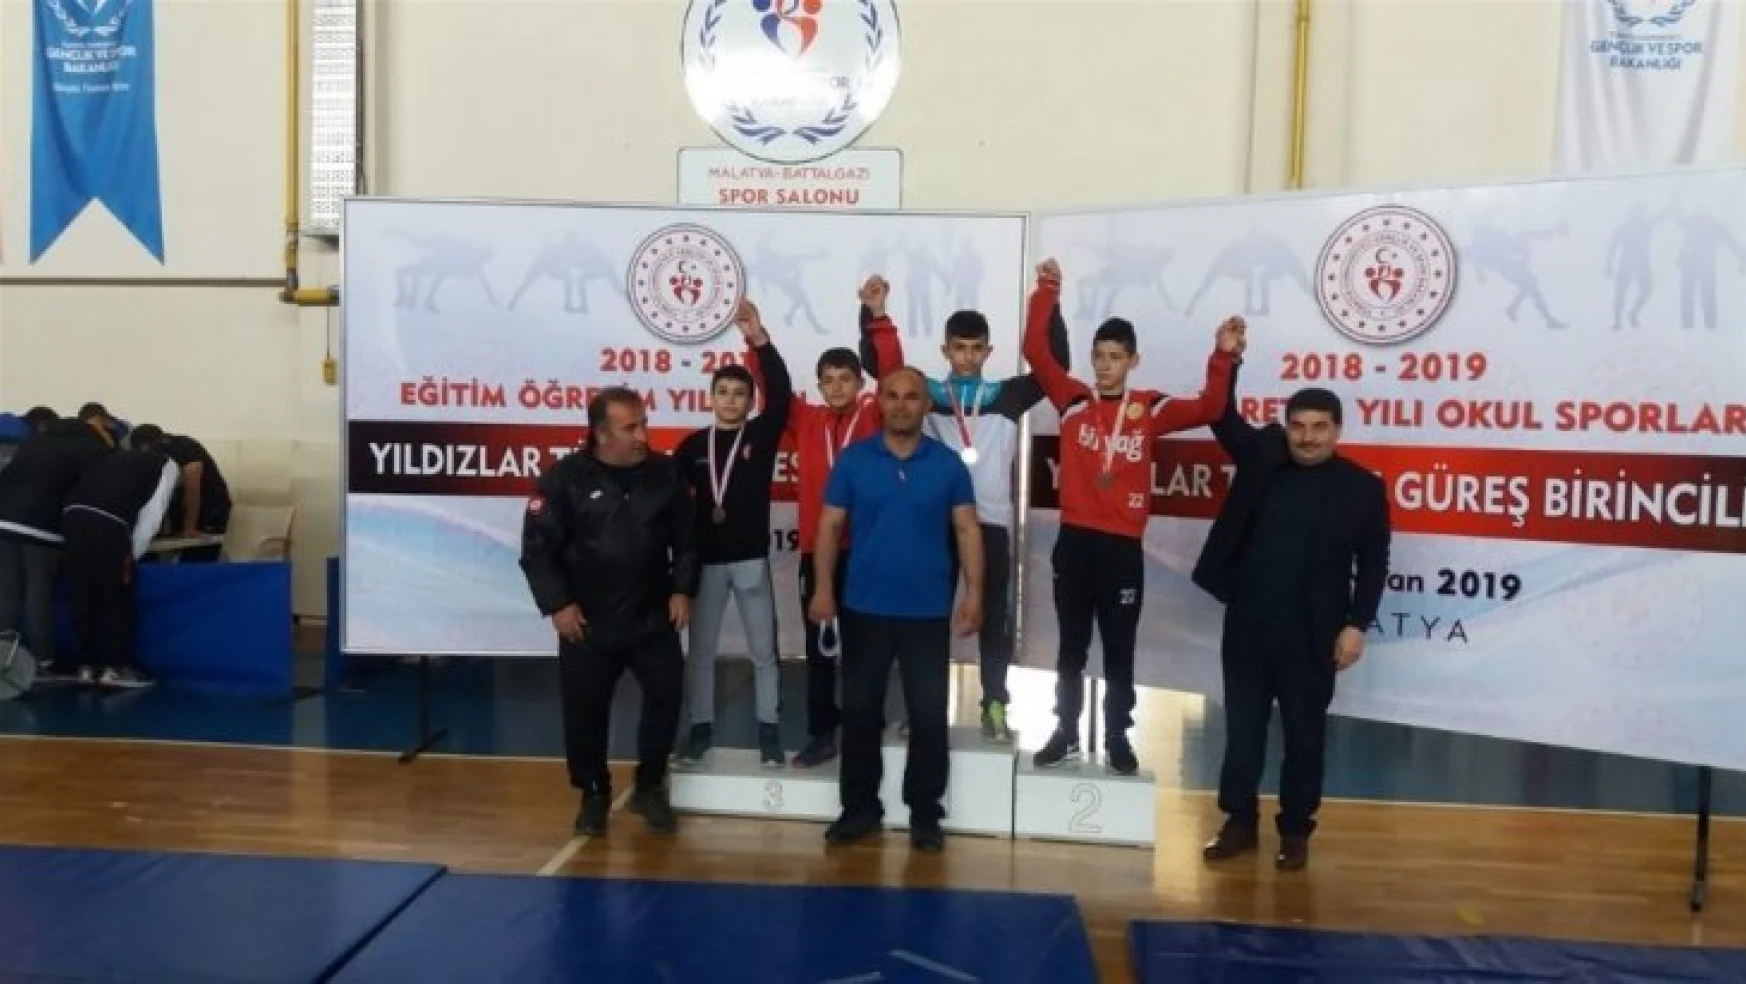 Güreş Türkiye Birinciliği Müsabakaları sona erdi